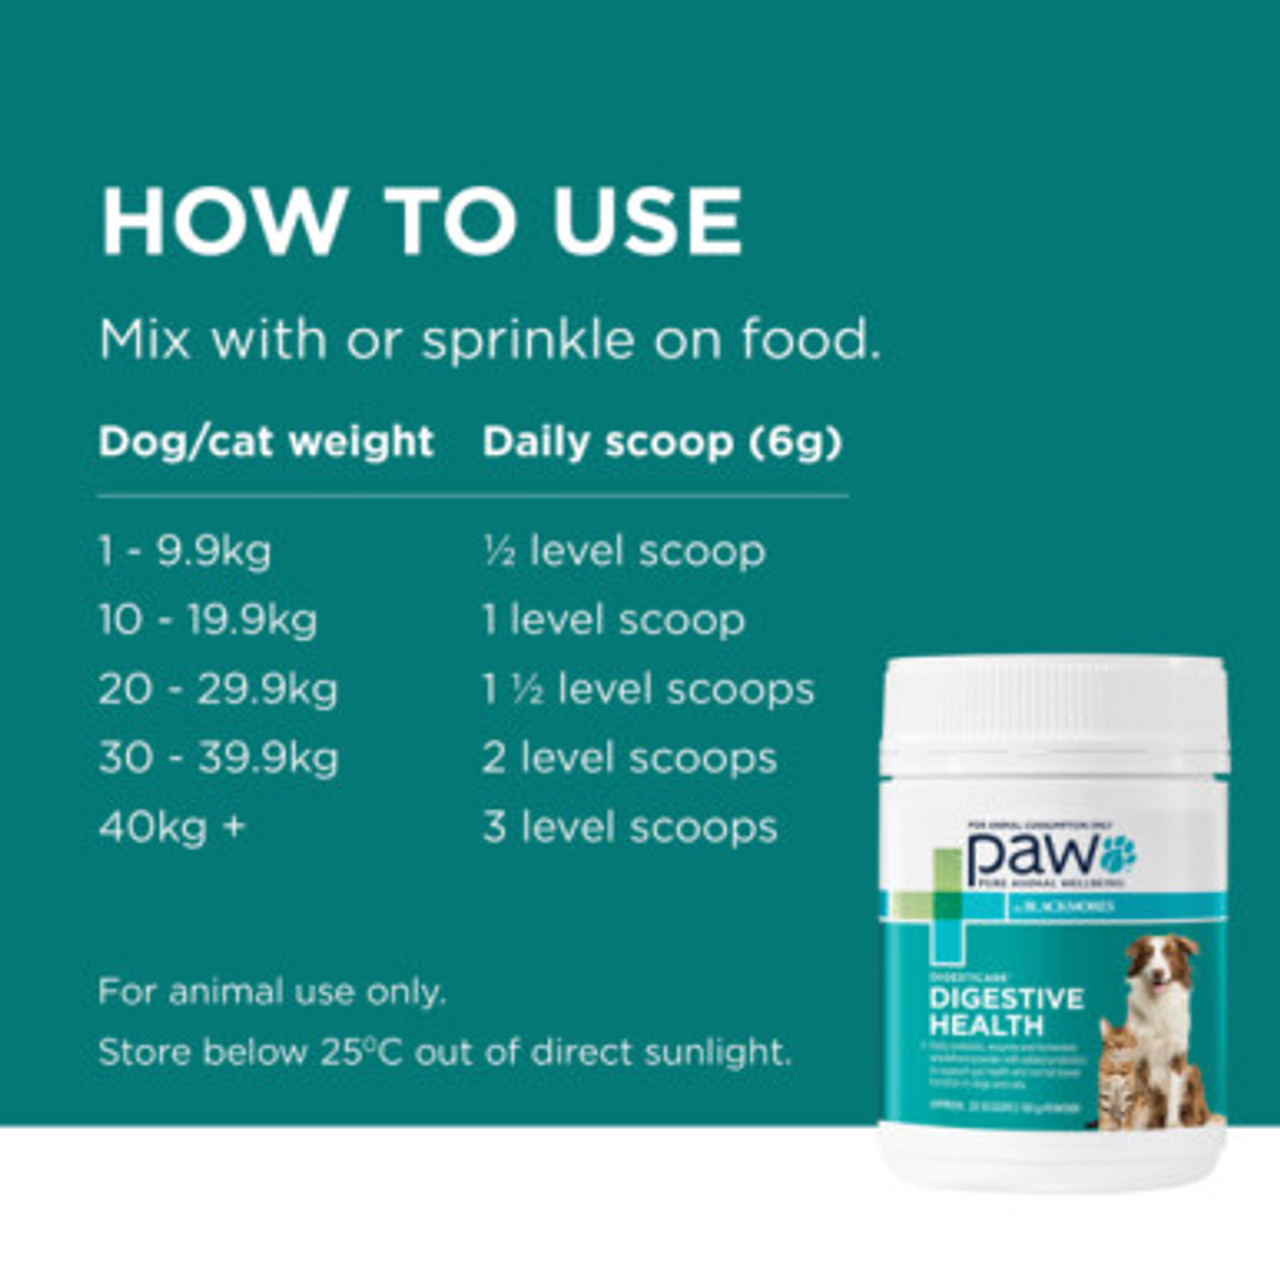 PAW By Blackmores DigestiCare Probiotico digestivo per cani e gatti 150g